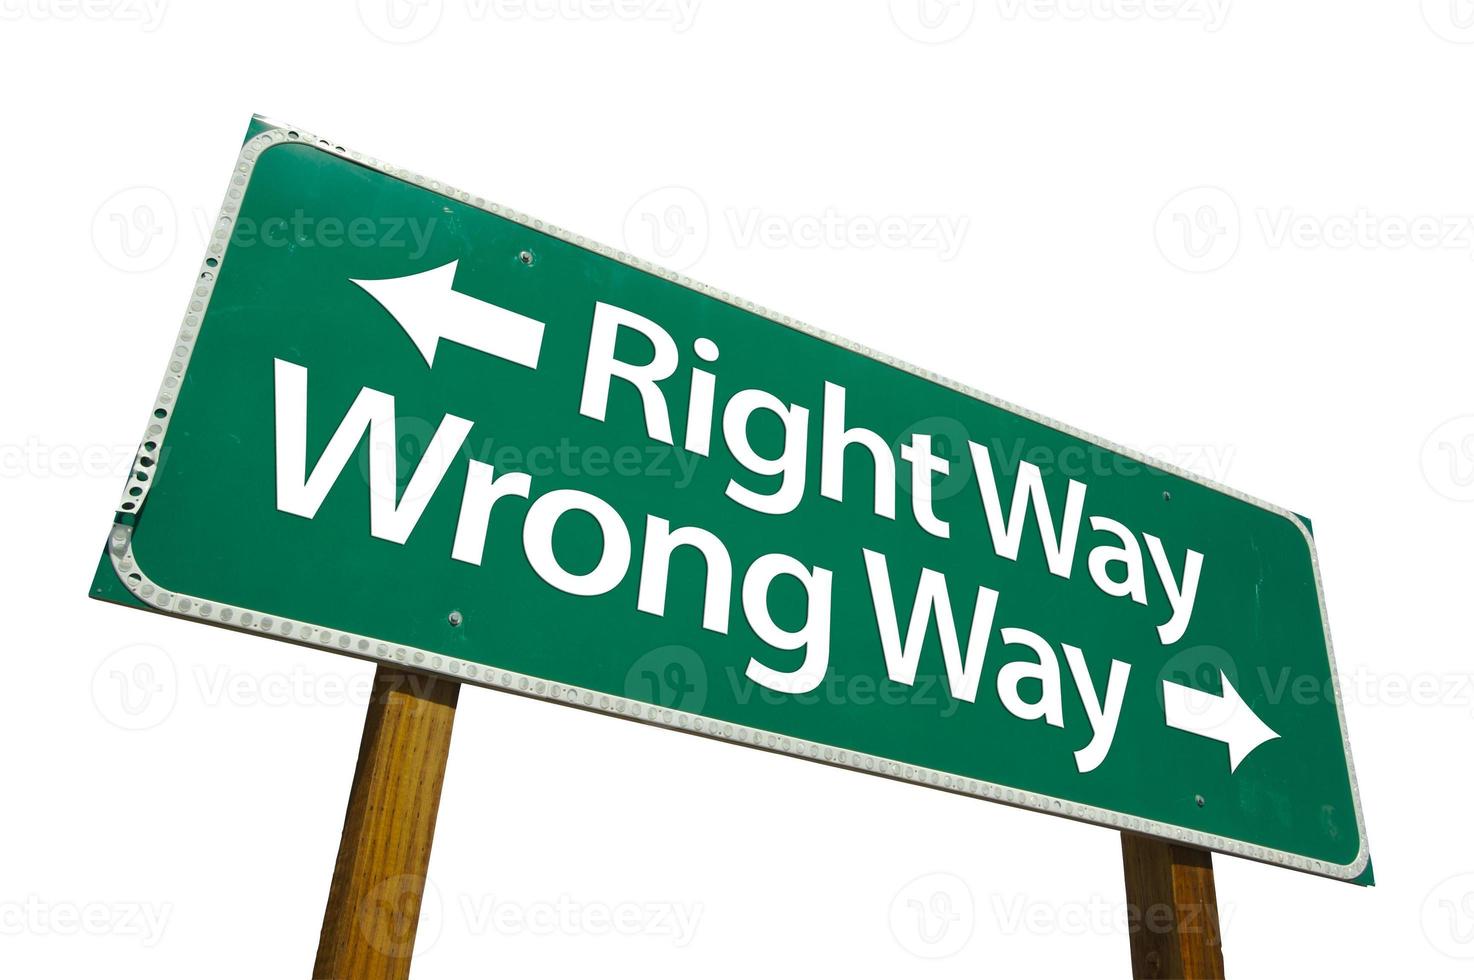 Right Way, Wrong Way Green Road Sign photo